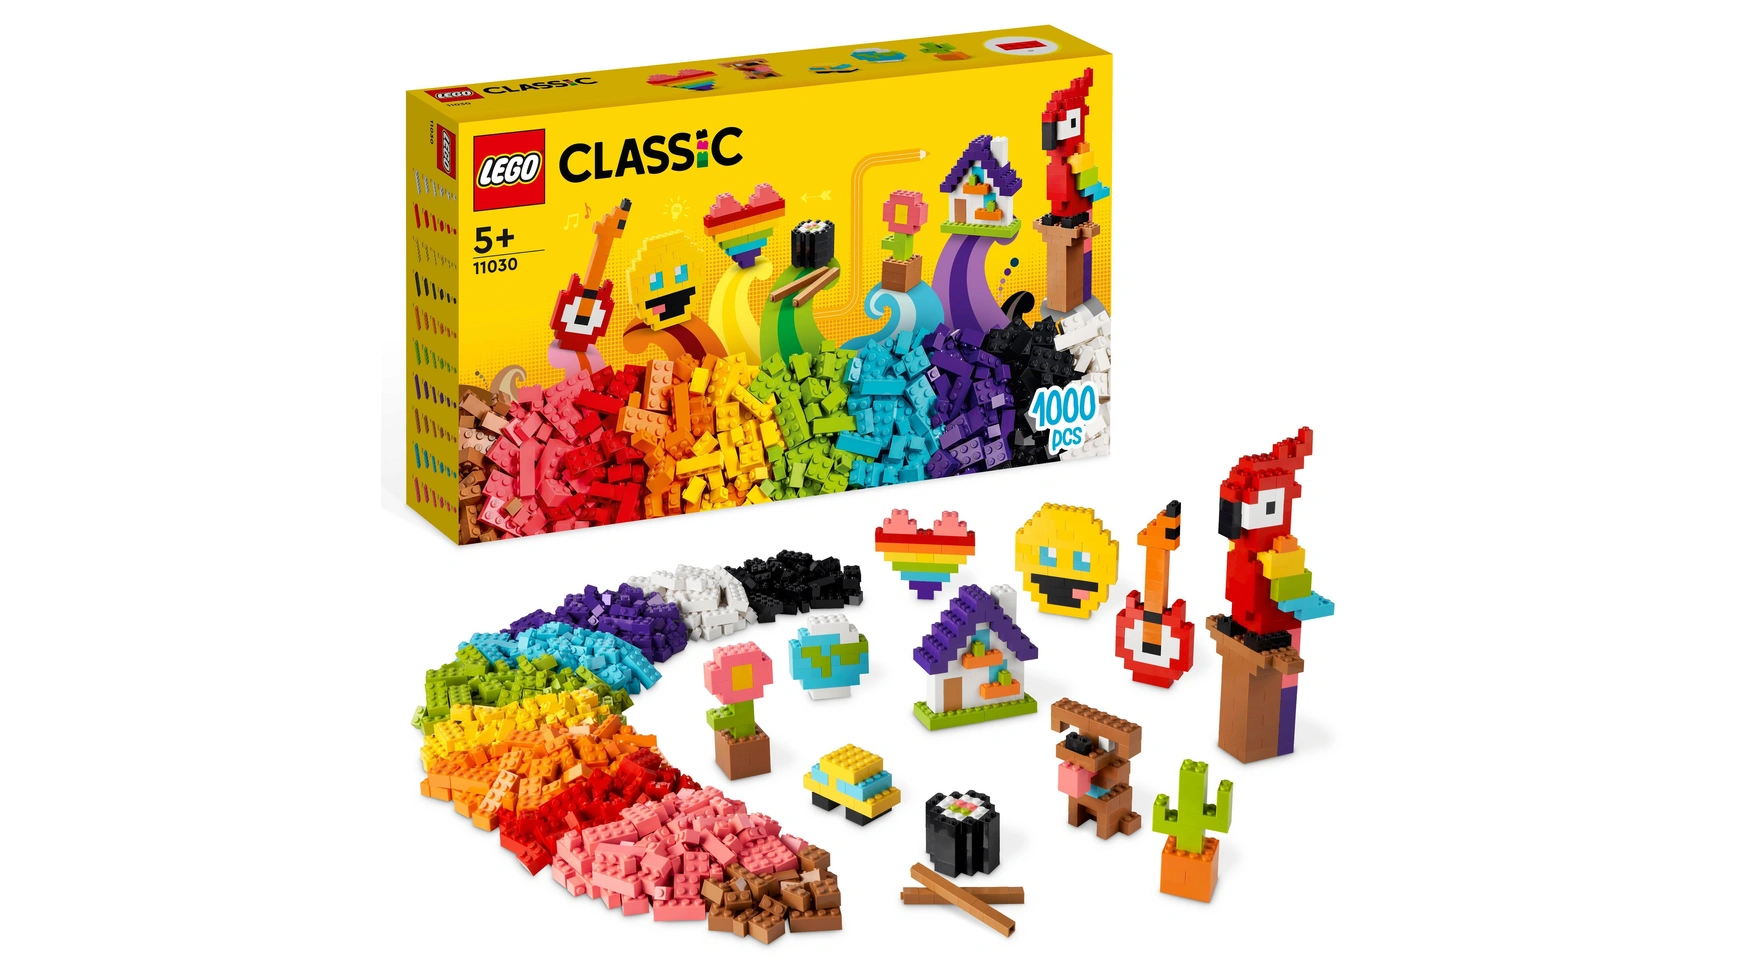 Lego Classic Большой набор для творчества, строительные блоки для детей от 5 лет конструктор lego classic 11006 синий набор для конструирования